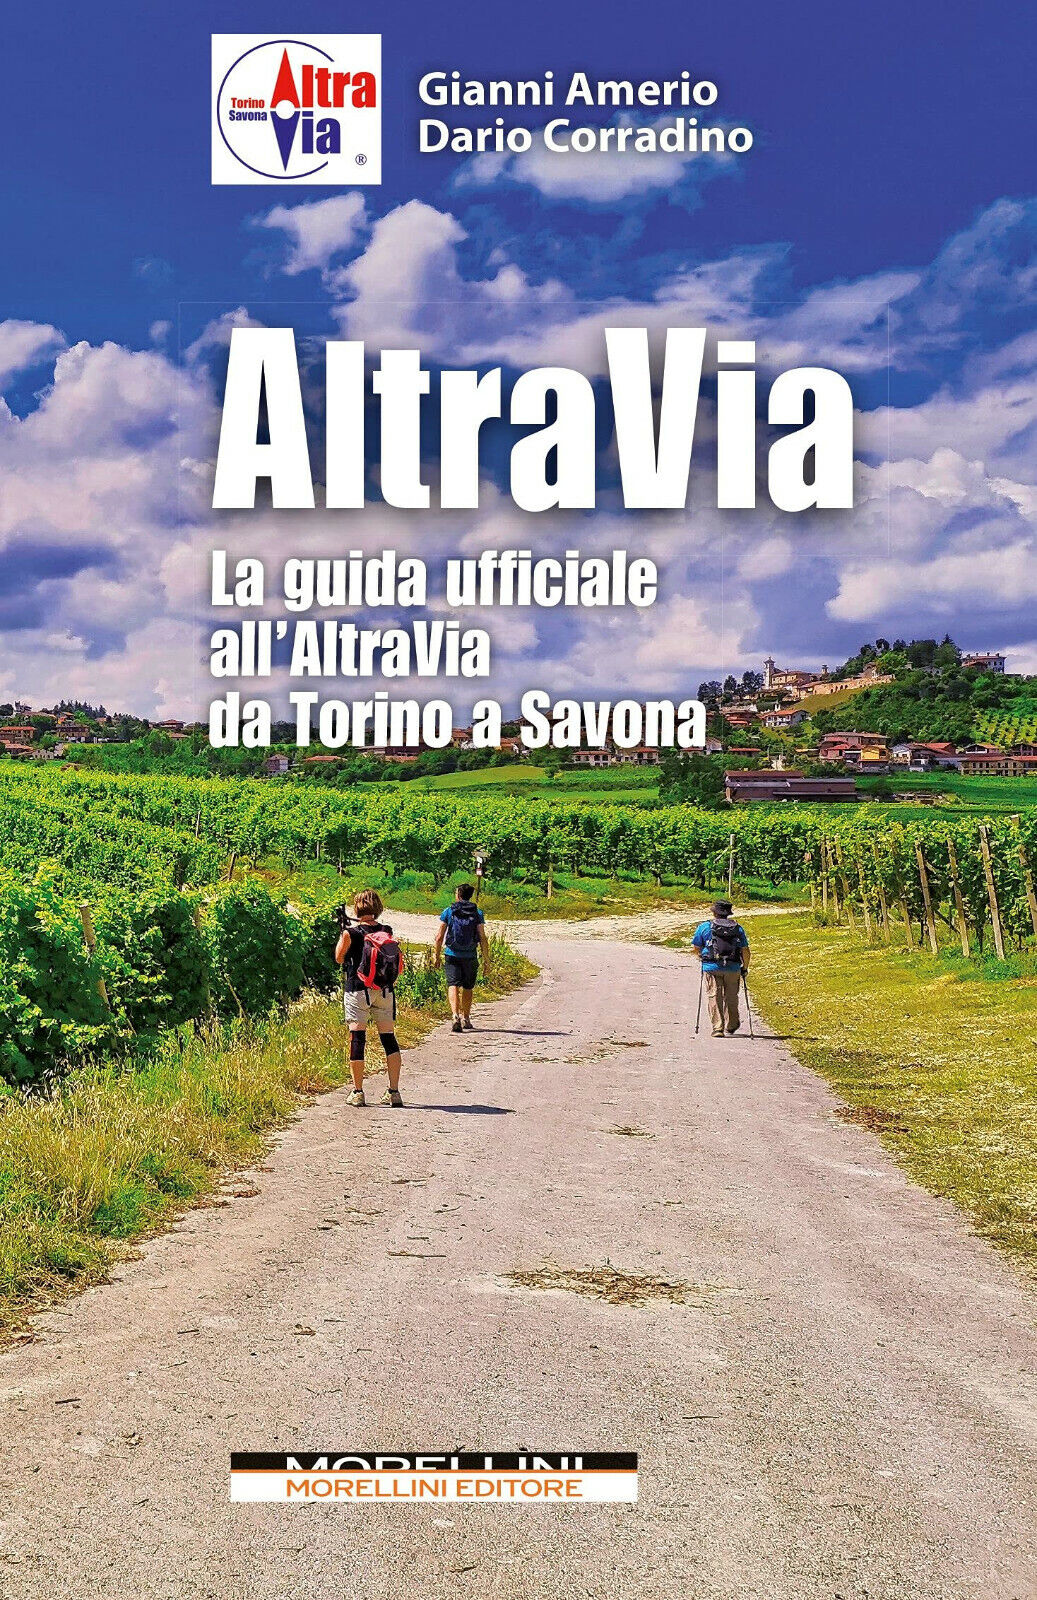 Altravia. La guida ufficiale all'Altravia da Torino a Savona - Morellini - 2021